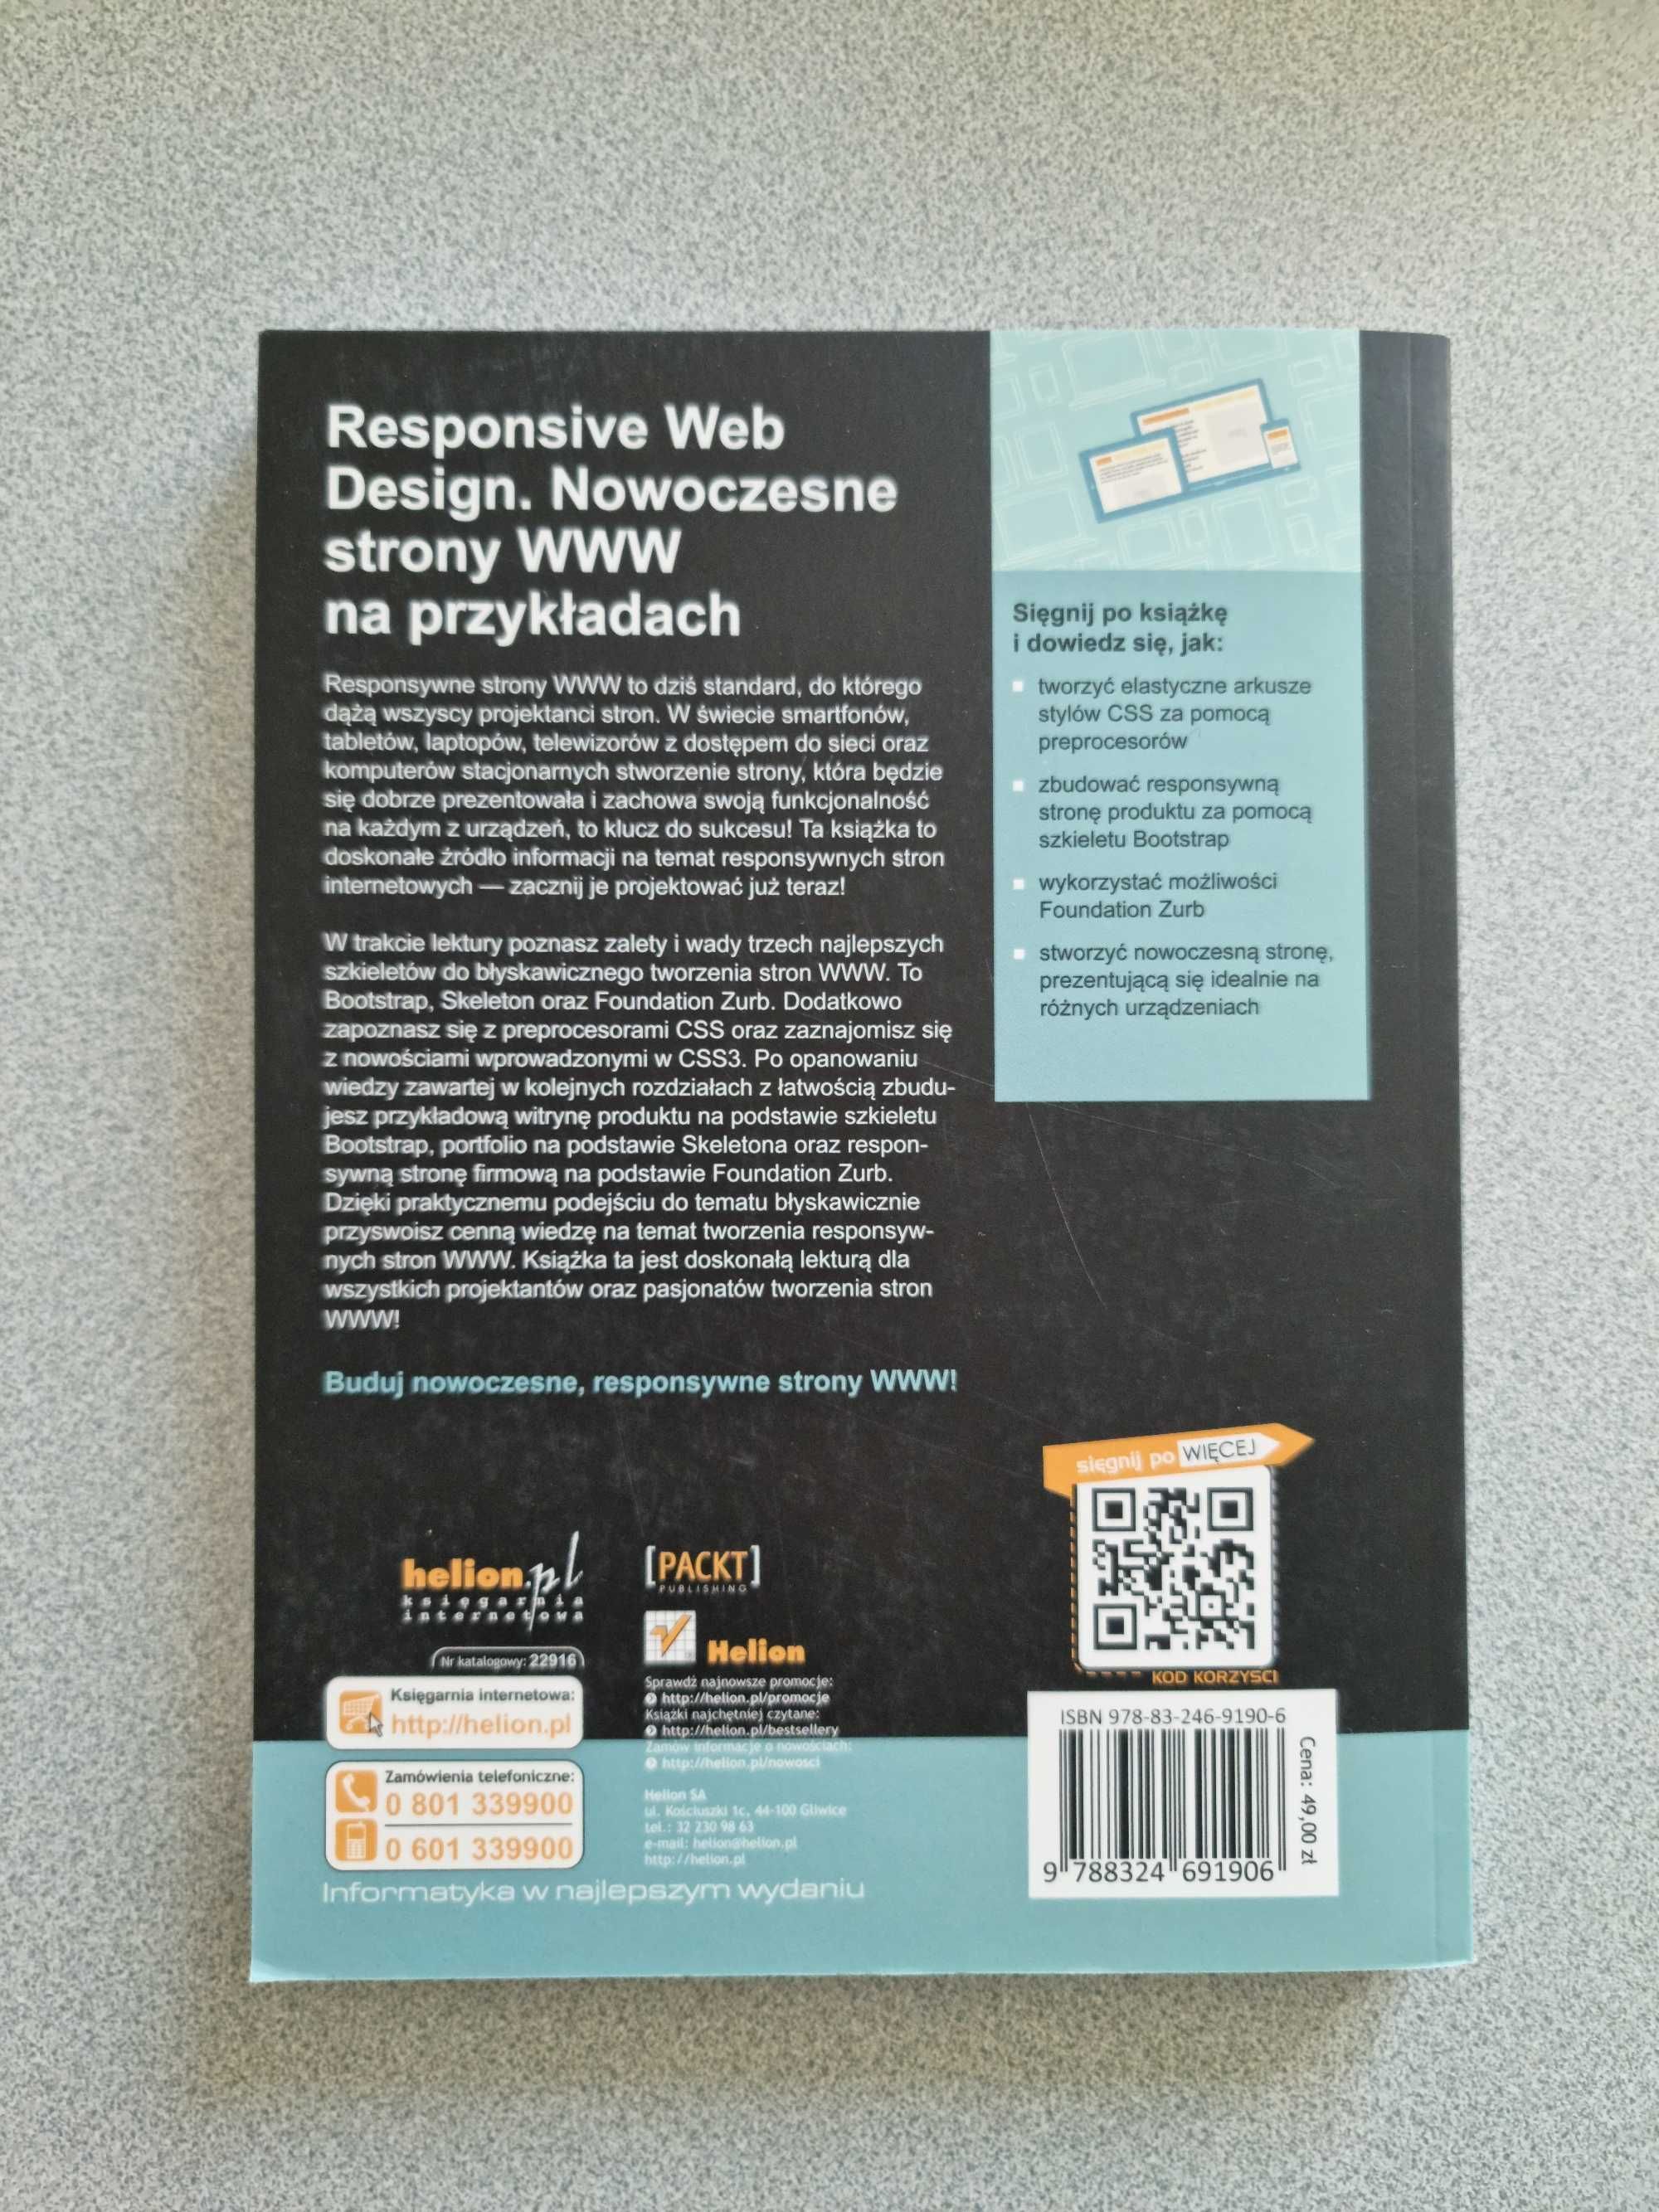 Książka Responsive Web Design. Nowoczesne strony WW na przykładach